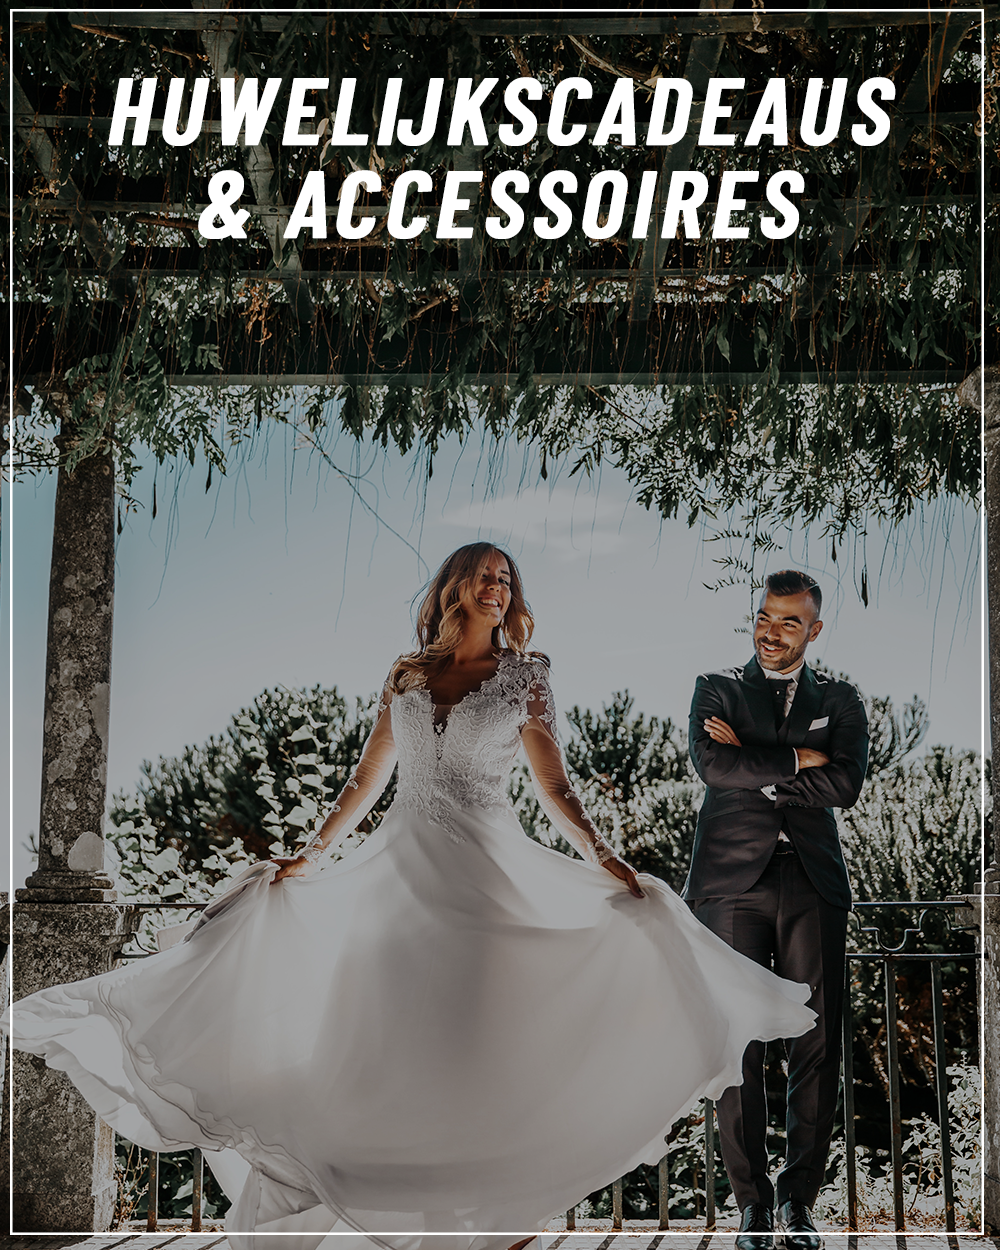 Carry Matig snor Huwelijk | Must-have cadeaus & accessoires voor de volgende bruiloft